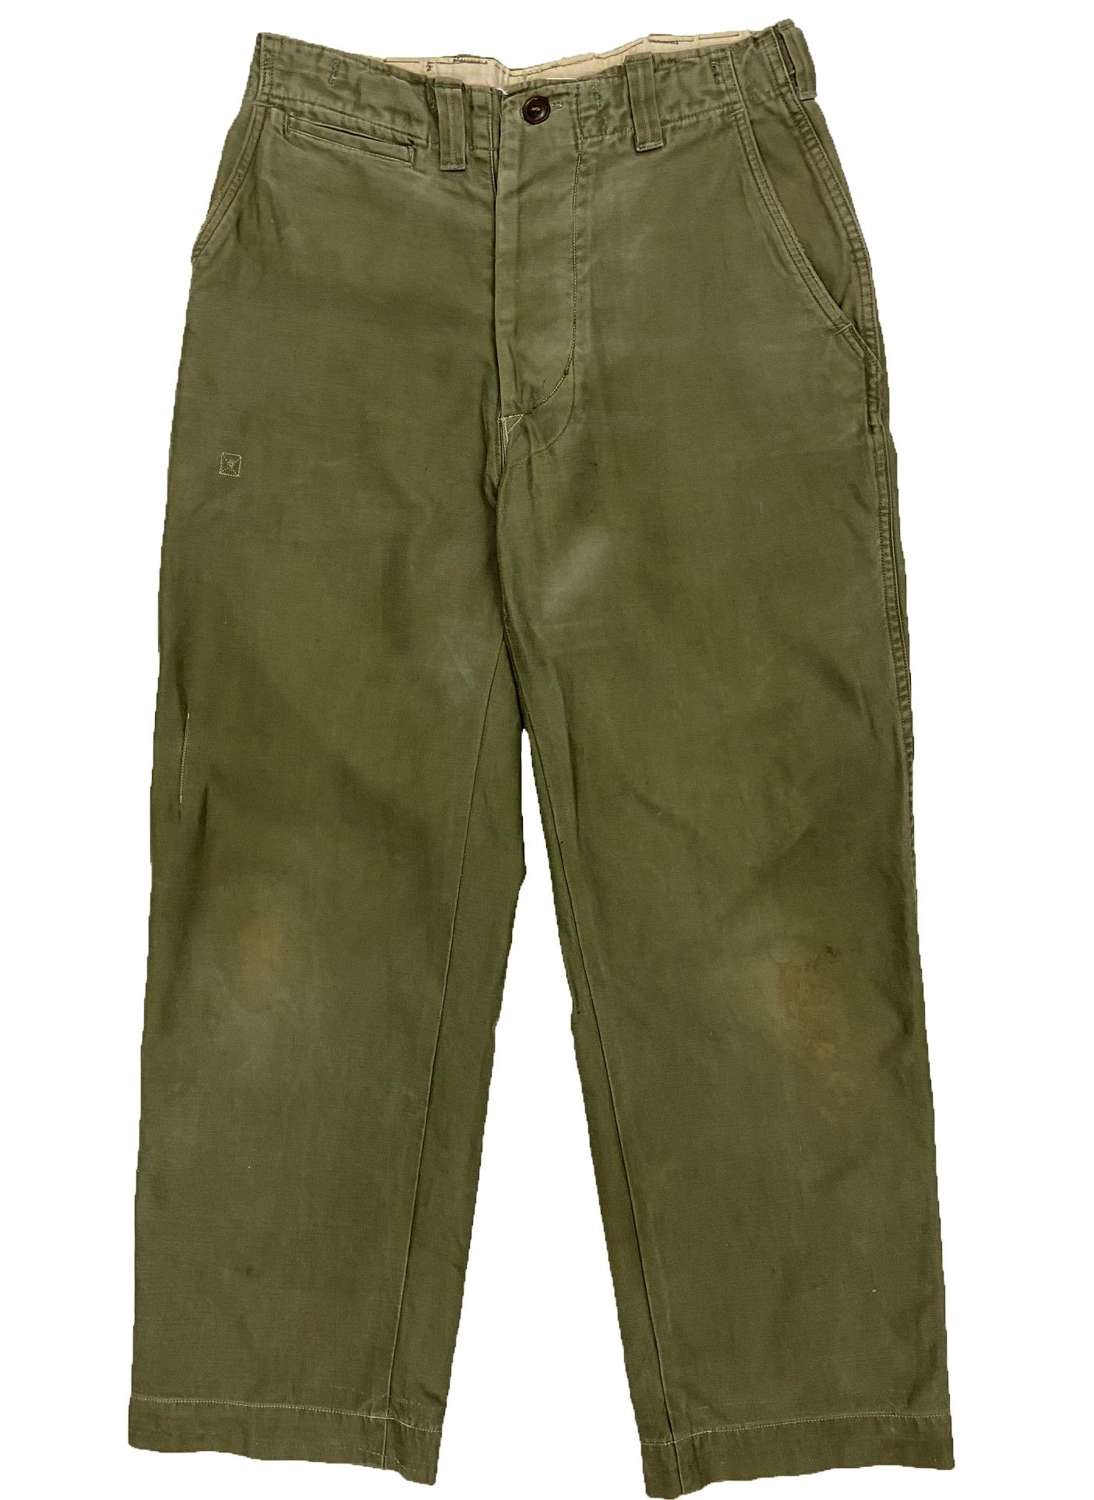 Original WW2 US Army M43 Combat trousers - Size 31x28